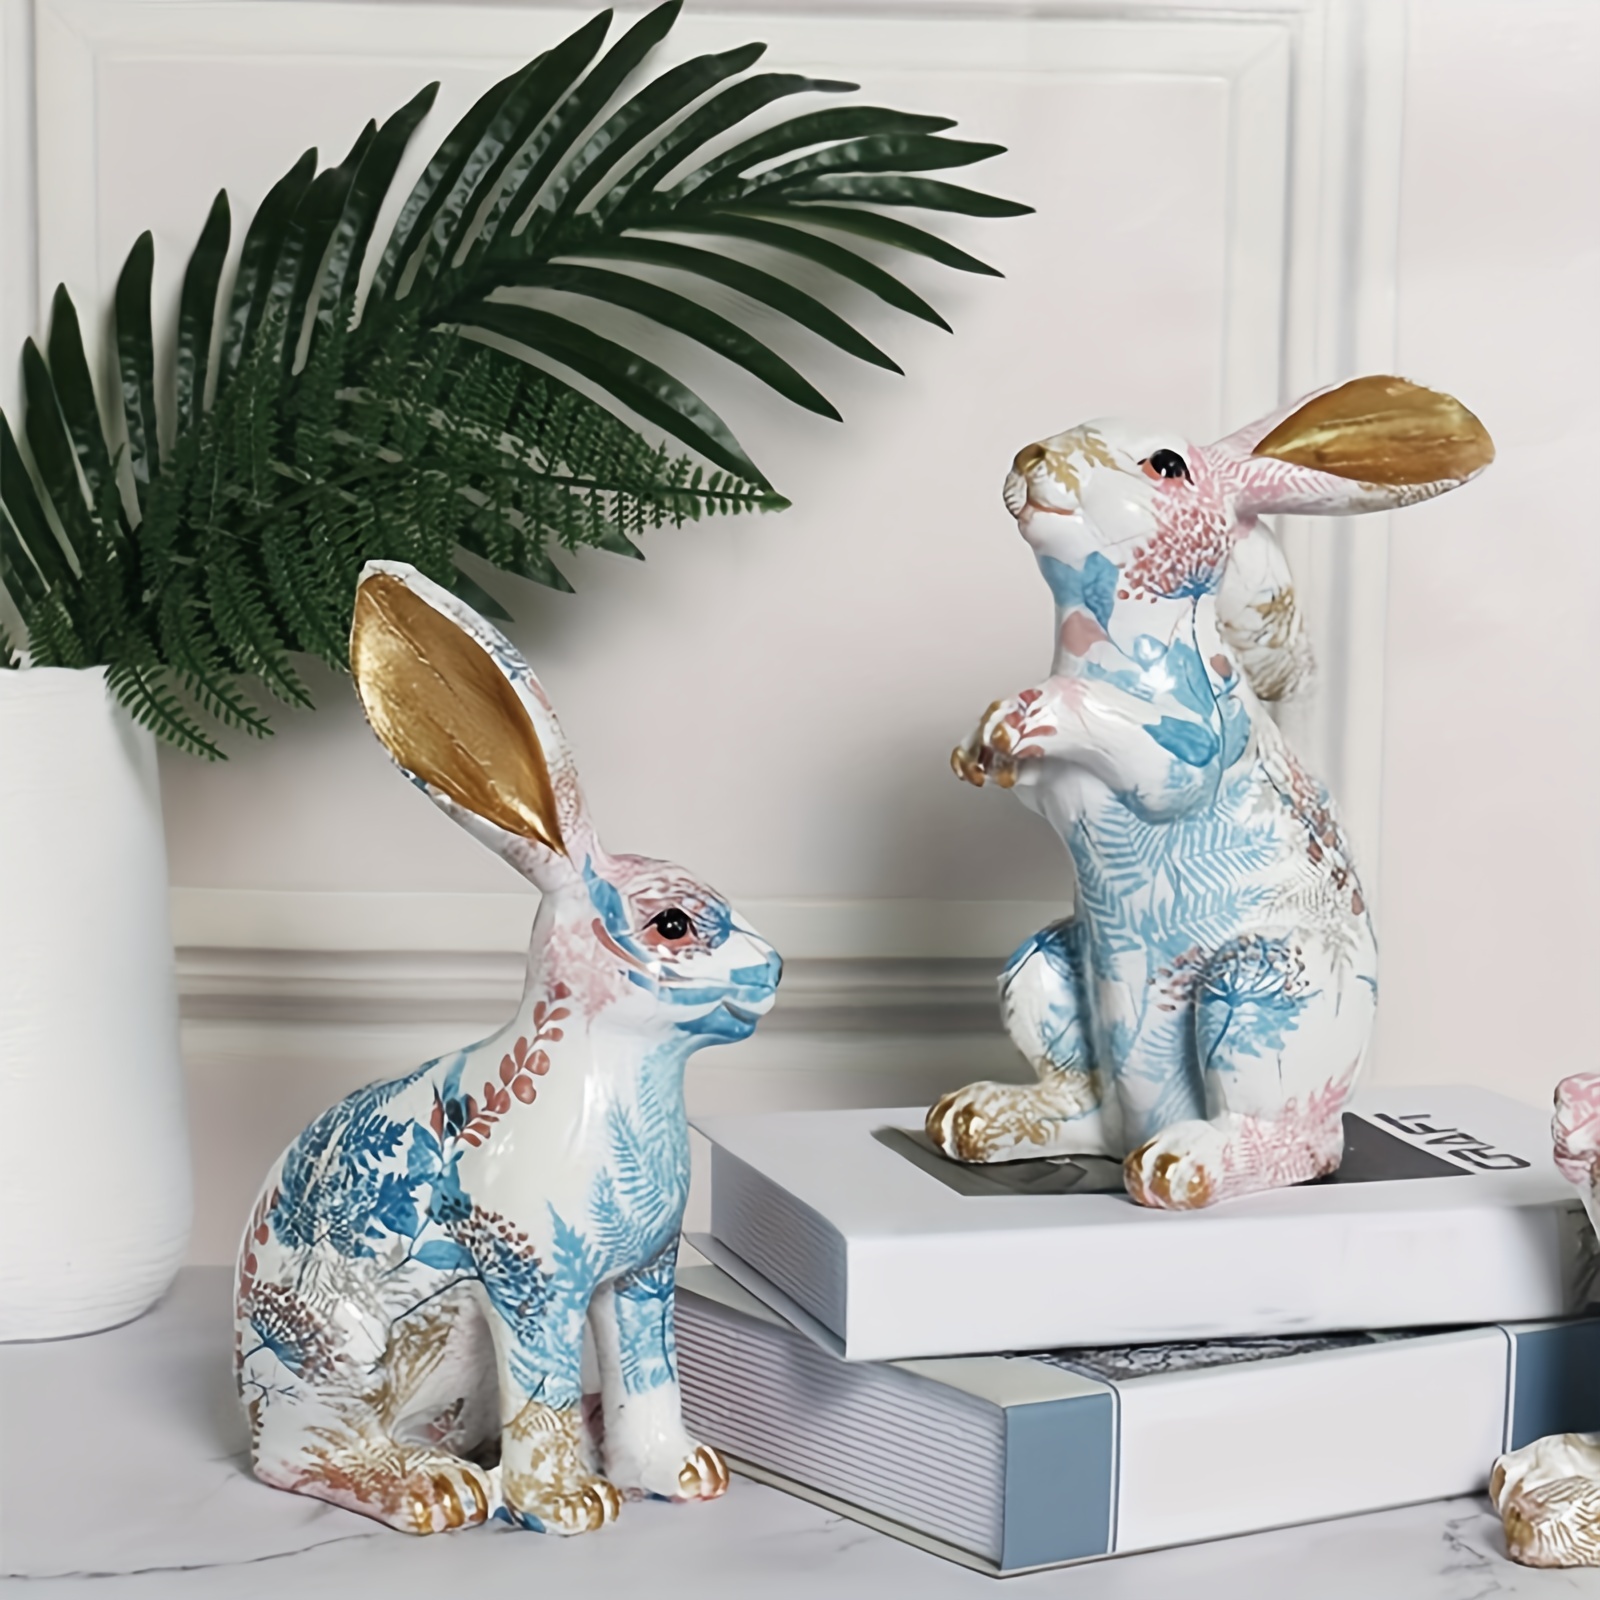  HOMSFOU Cartoon-Kaninchen-Ornamente Badezimmerdekorationen  Wohnkultur Statuen Hasenornament Geburtstagsgeschenke Für Kinder Kaninchen-dekor  Süße Hasendekoration Desktop-Kaninchen-Statue